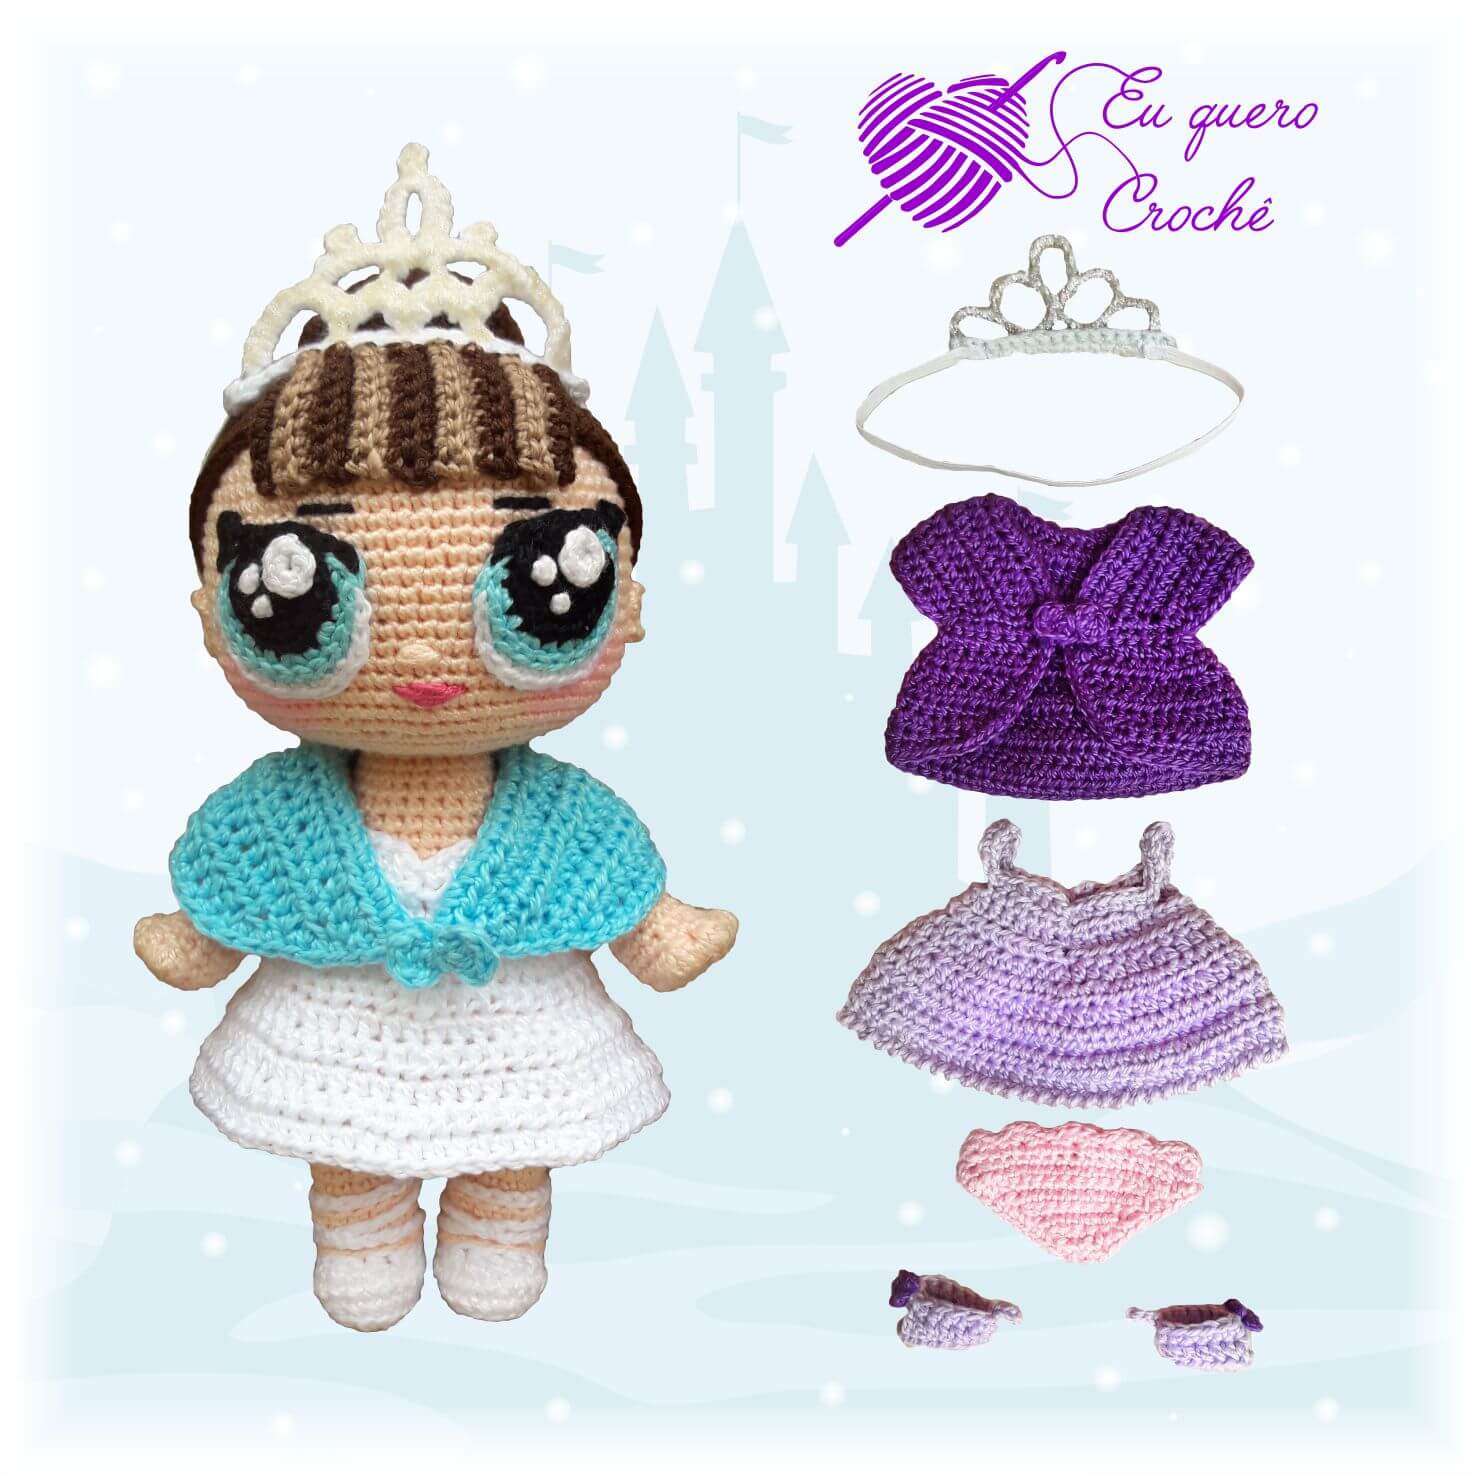 Lola Princesa - Eu Quero Crochê